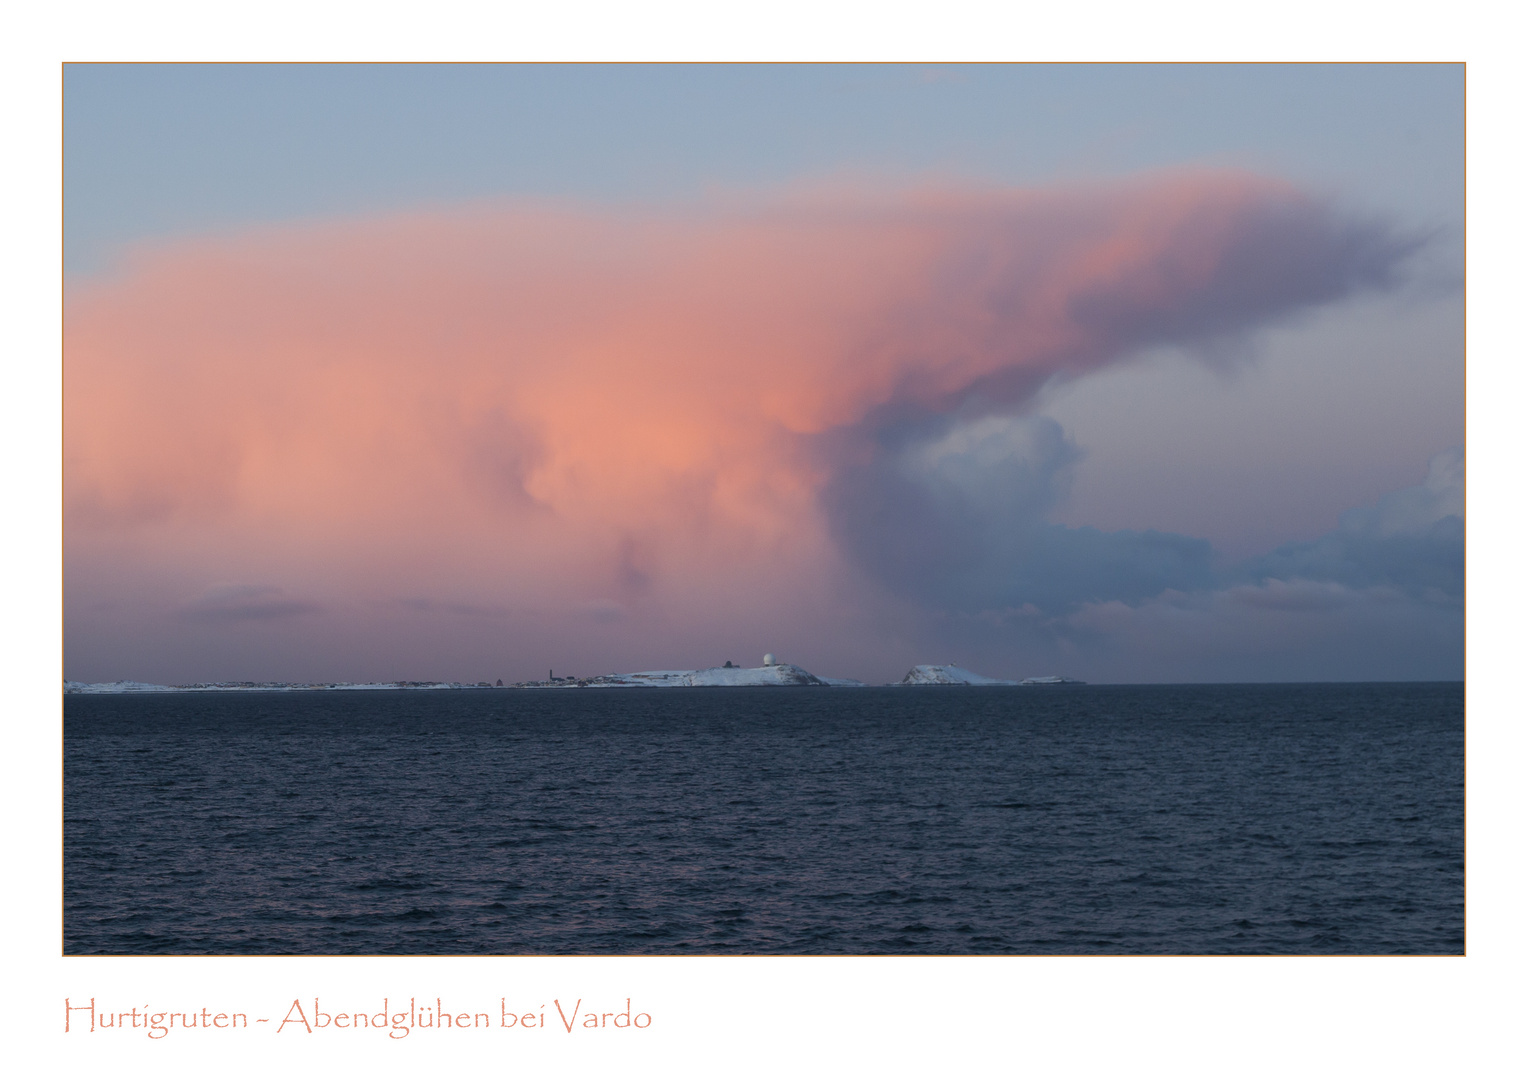 Hurtigrute - "Feuerwolken" über Vardo